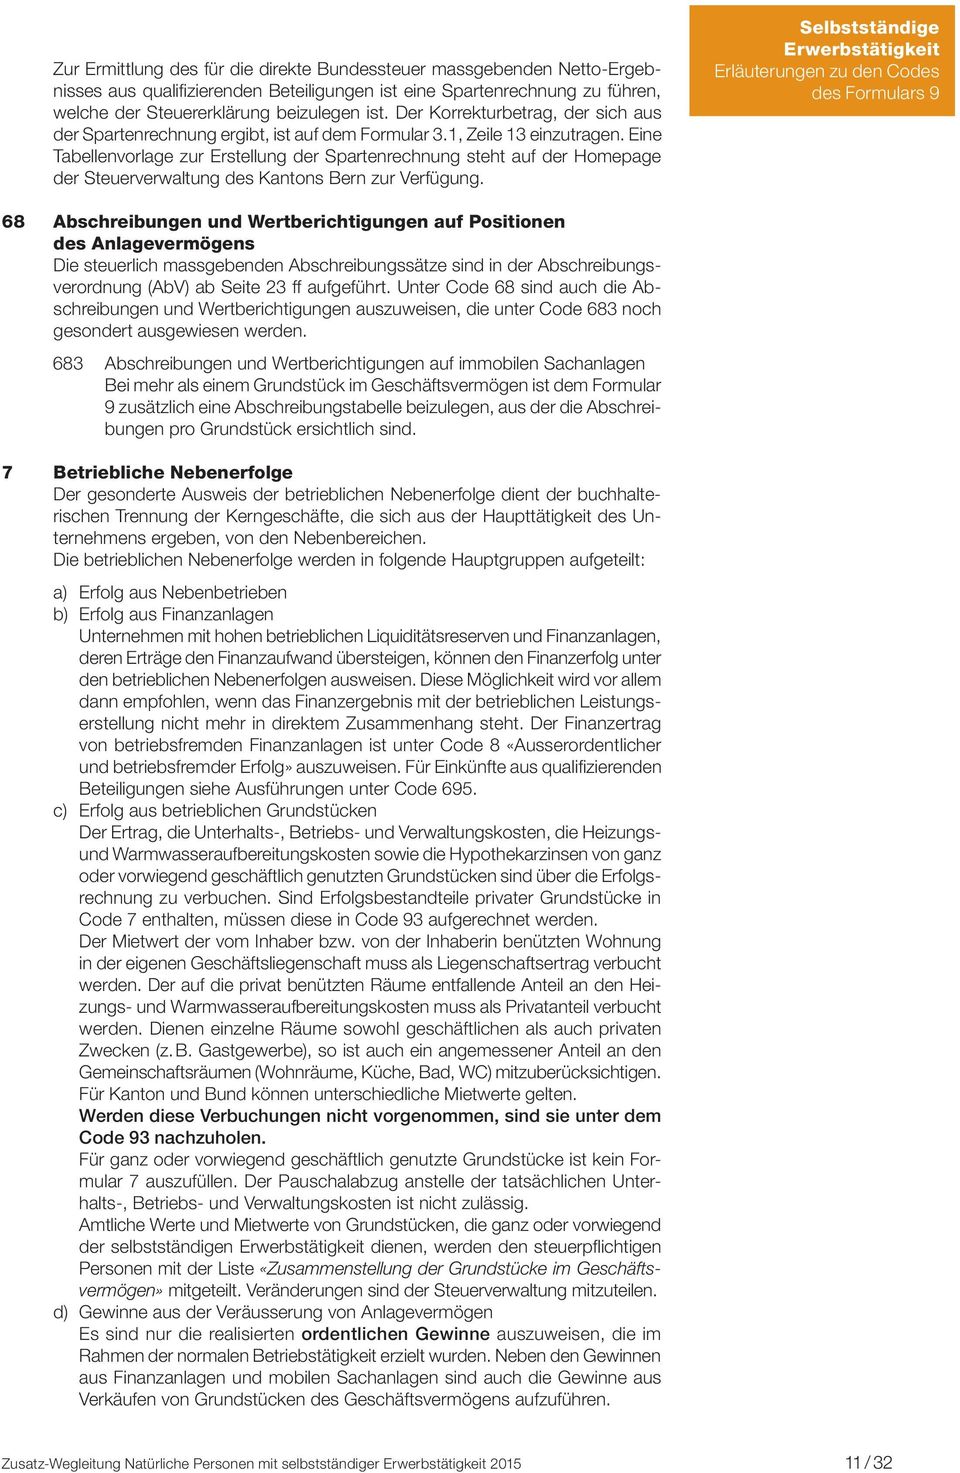 Eine Tabellenvorlage zur Erstellung der Spartenrechnung steht auf der Homepage der Steuerverwaltung des Kantons Bern zur Verfügung.